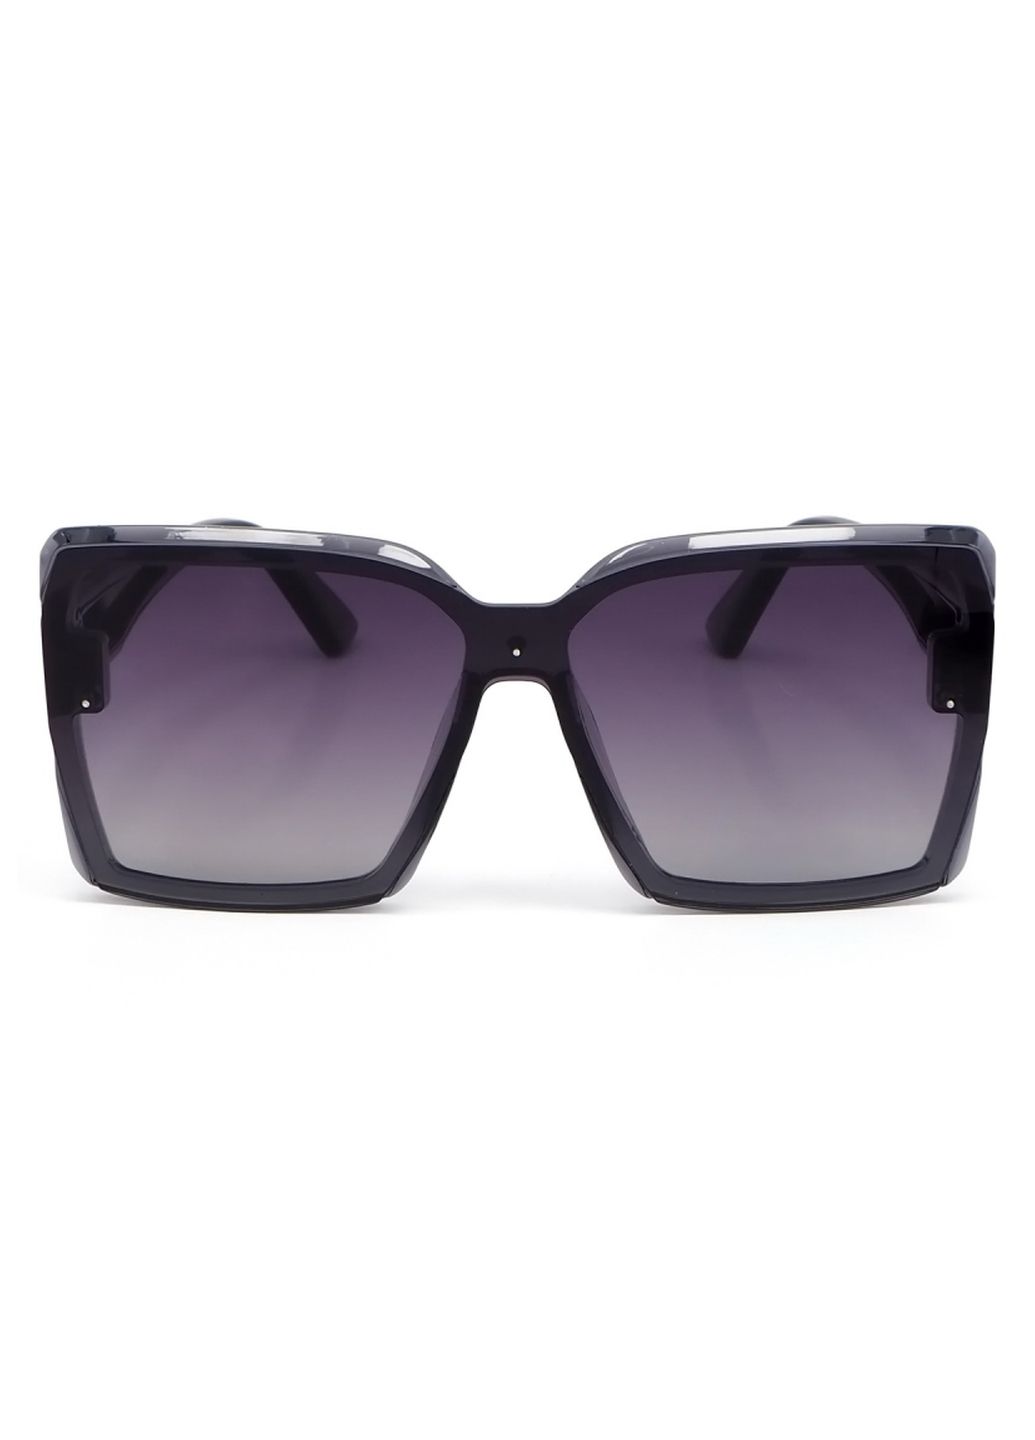 Купить Женские солнцезащитные очки Rita Bradley с поляризацией RB713 112026 в интернет-магазине